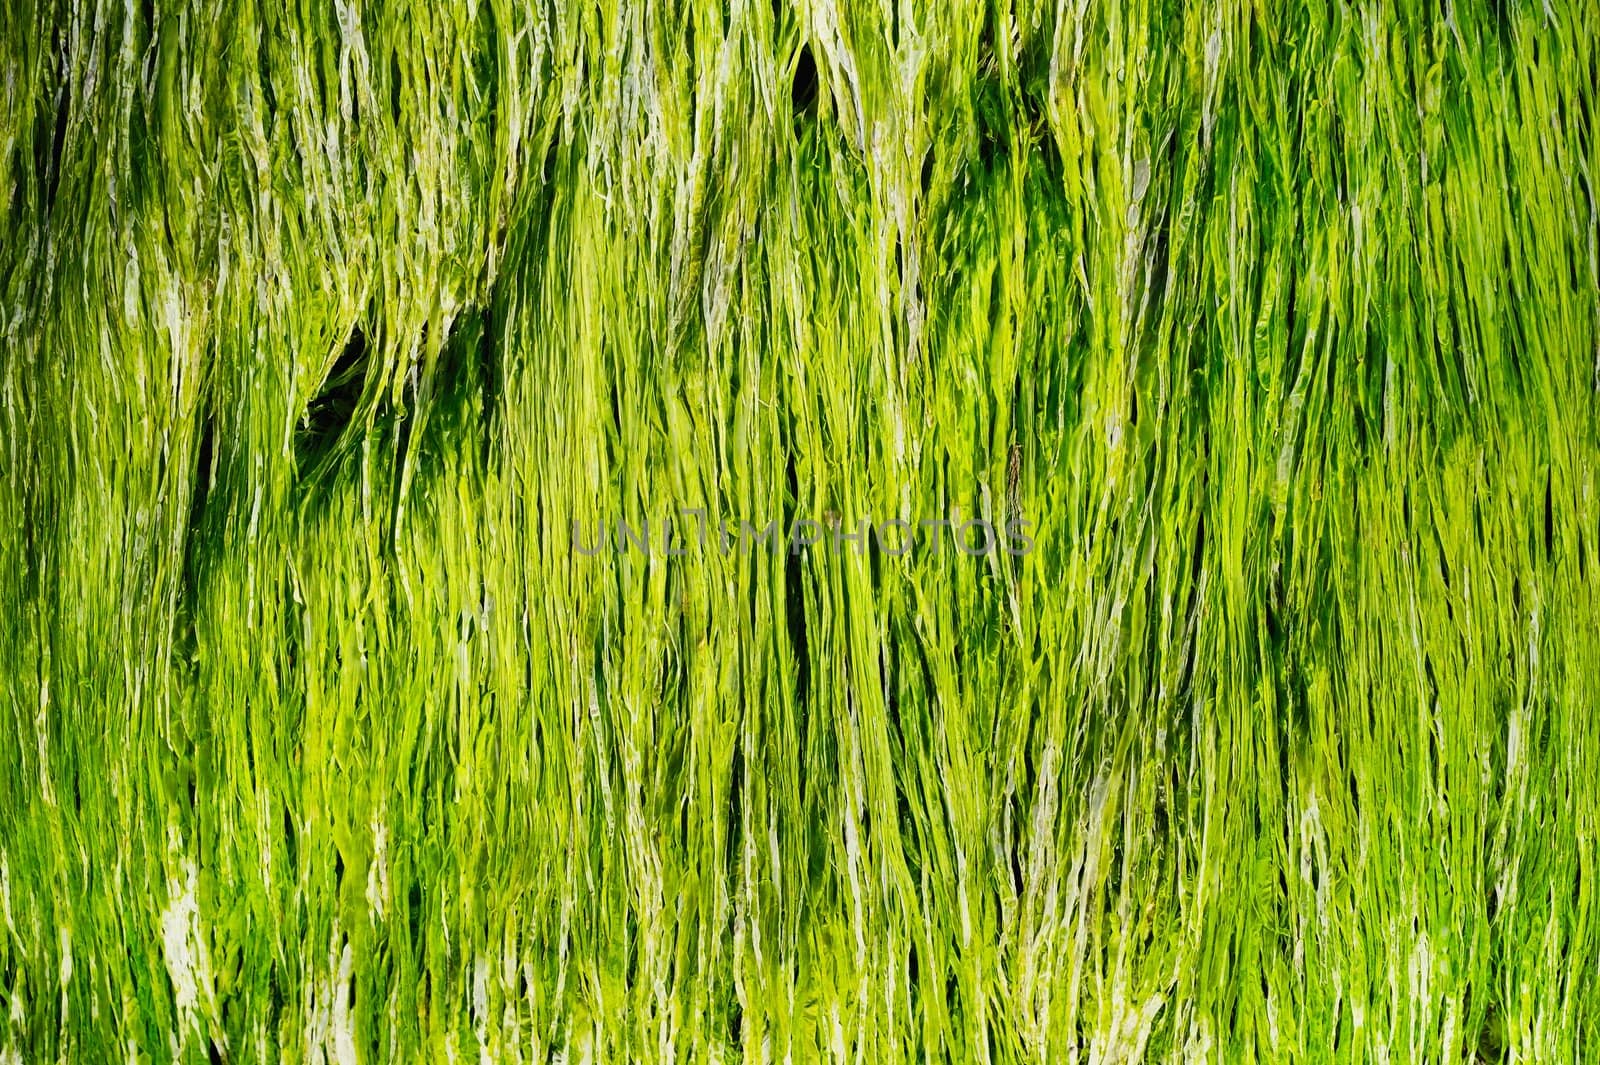 Sea Grass by styf22